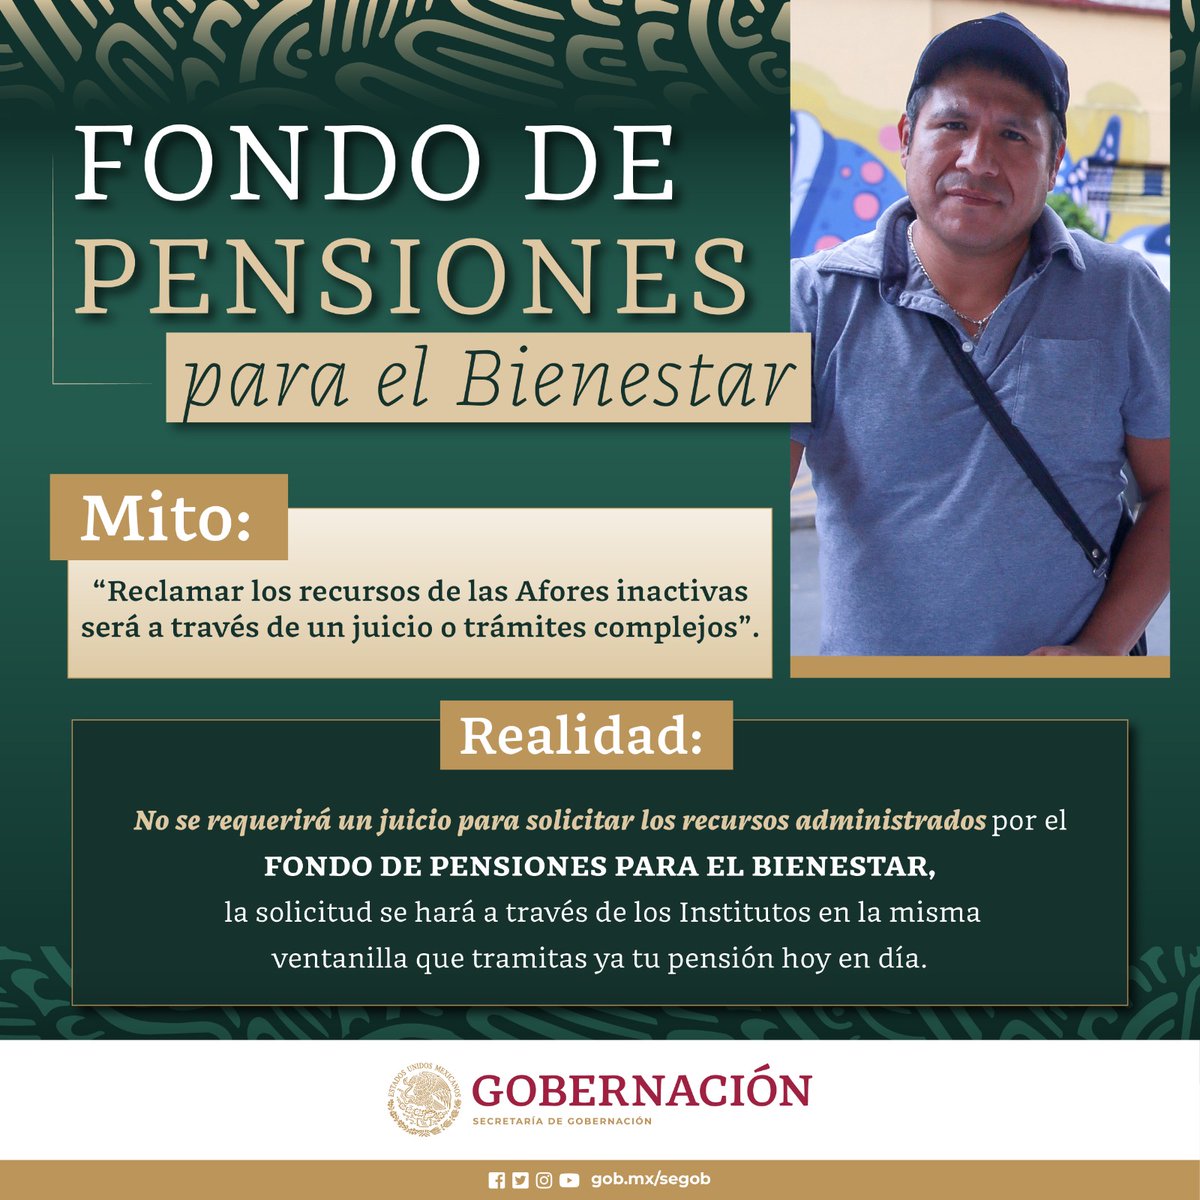 👉 ¡Recuerda! Puedes reclamar tu #Afore inactiva en cualquier momento. 

#reforma #afores #pensiones #méxico